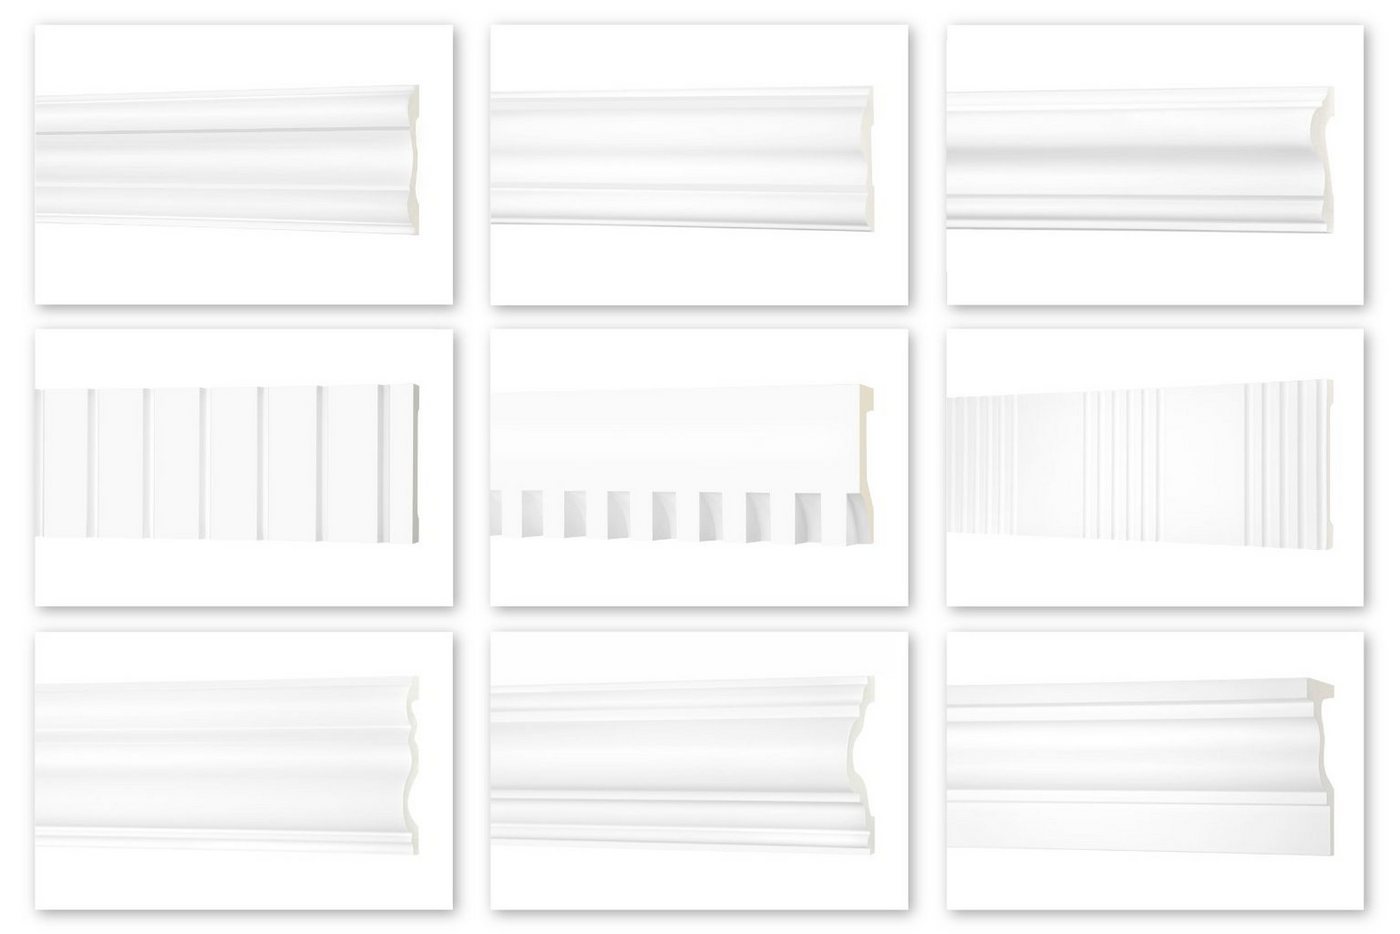 Hexim Perfect Stuckleiste AD 407, Flachleiste aus PU Serie 2 - Stuckleiste glatt, weißes Zierprofil, hart & stoßfest - Wandleiste vorgrundiert von Hexim Perfect